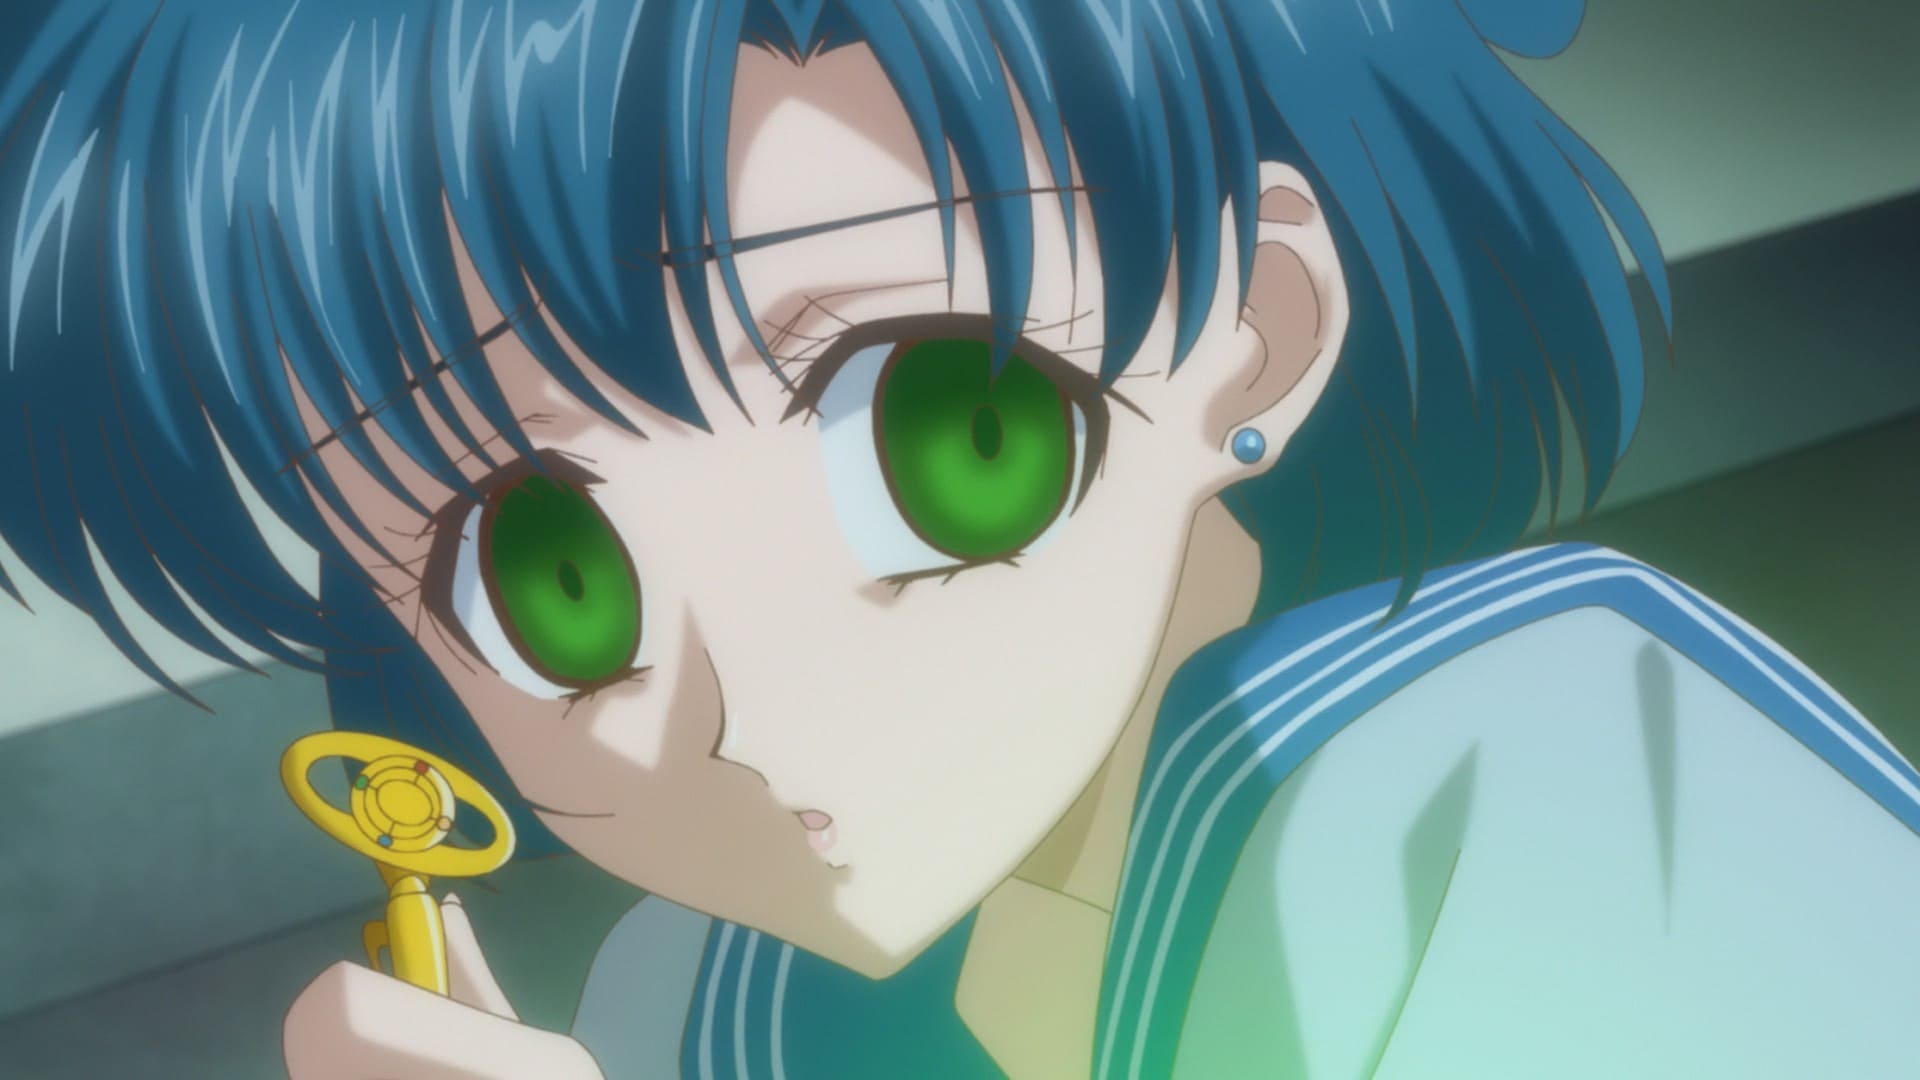 Sailor Moon Crystal (Eps 1-26) Act. 2 Ami - Sailor Mercury - - Watch on  Crunchyroll